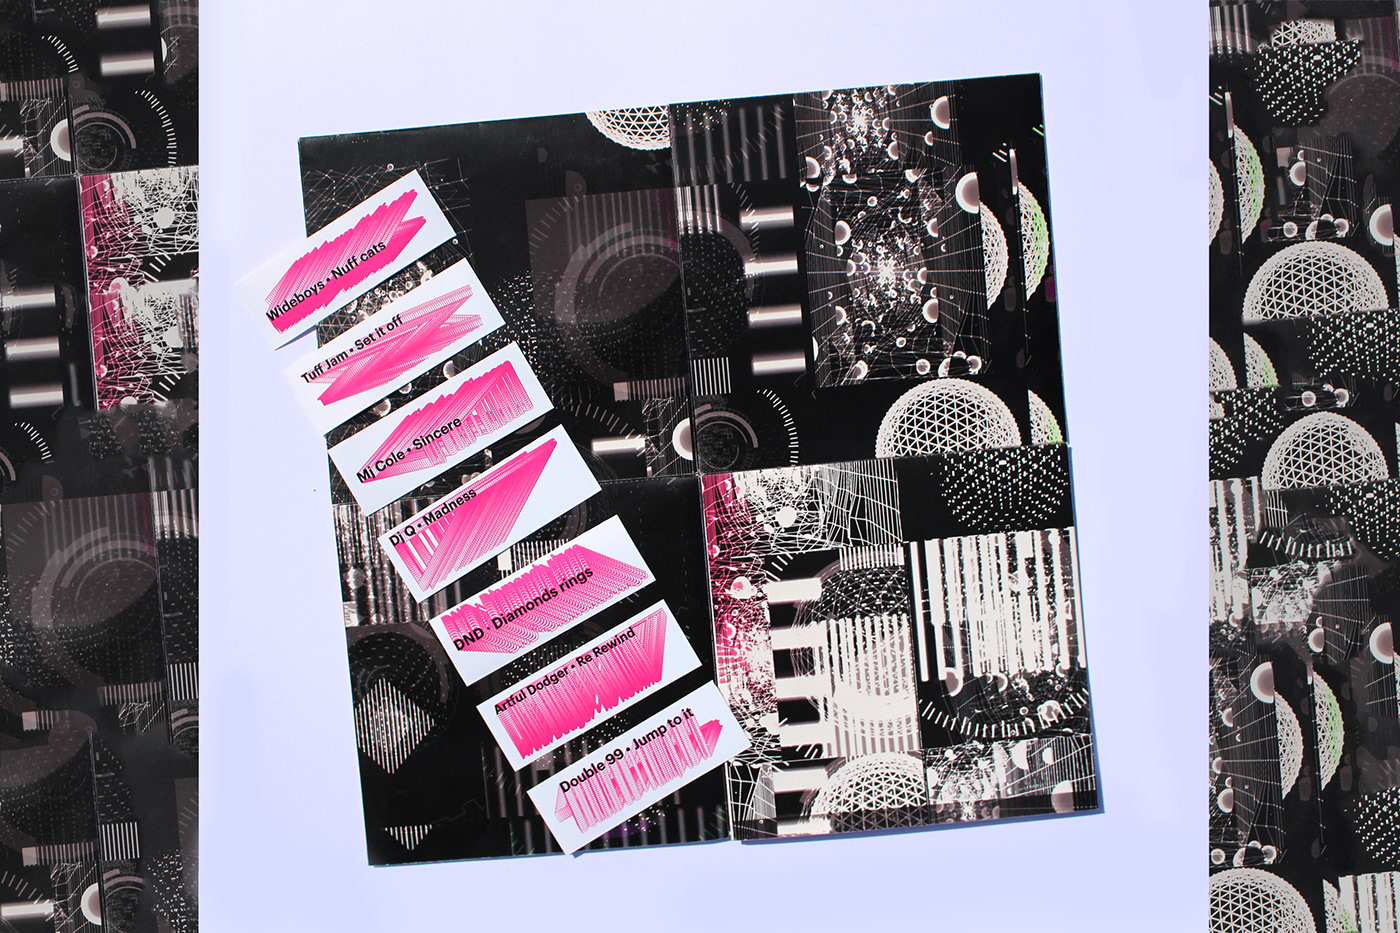 musique électronique music electro edition fanzine magazine vinyl pochette augmented reality réalité augmentée